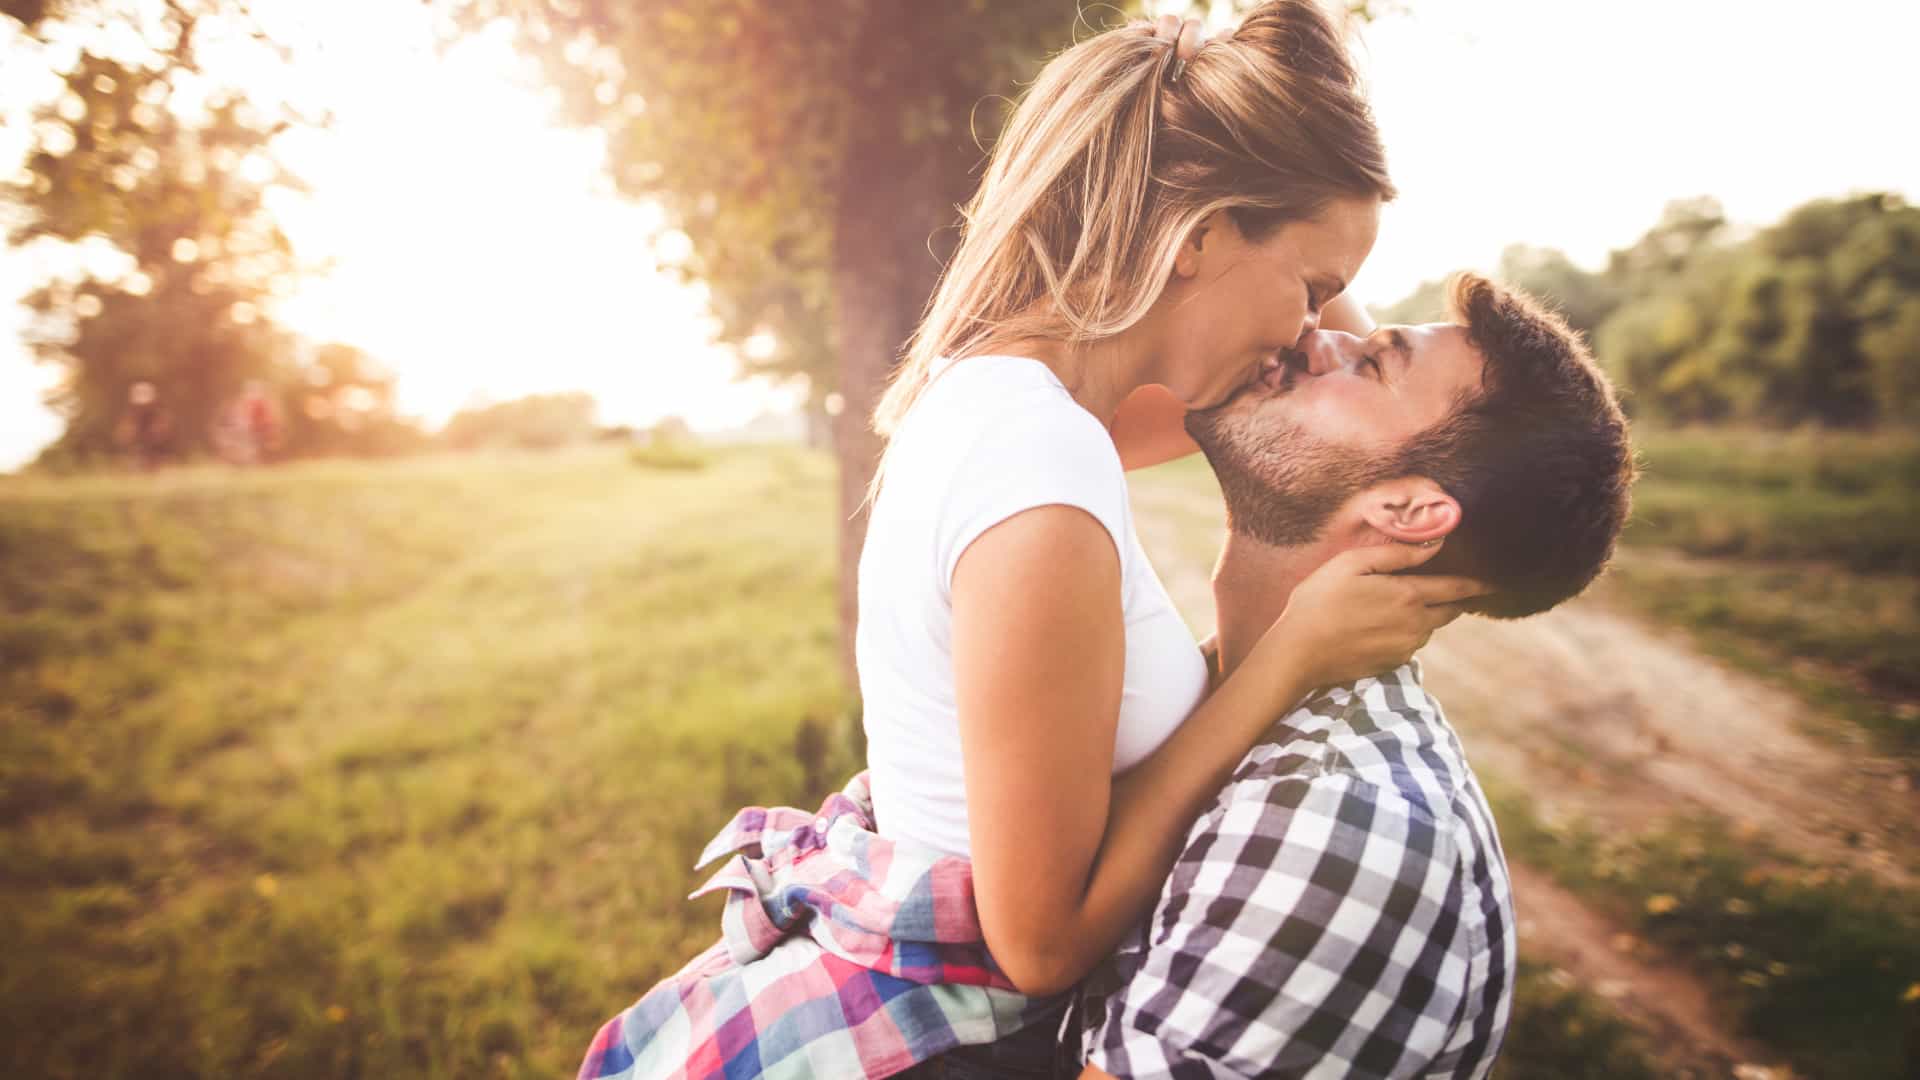 Beijos quentes: 8 tipos de beijos para pegar o crush de jeito